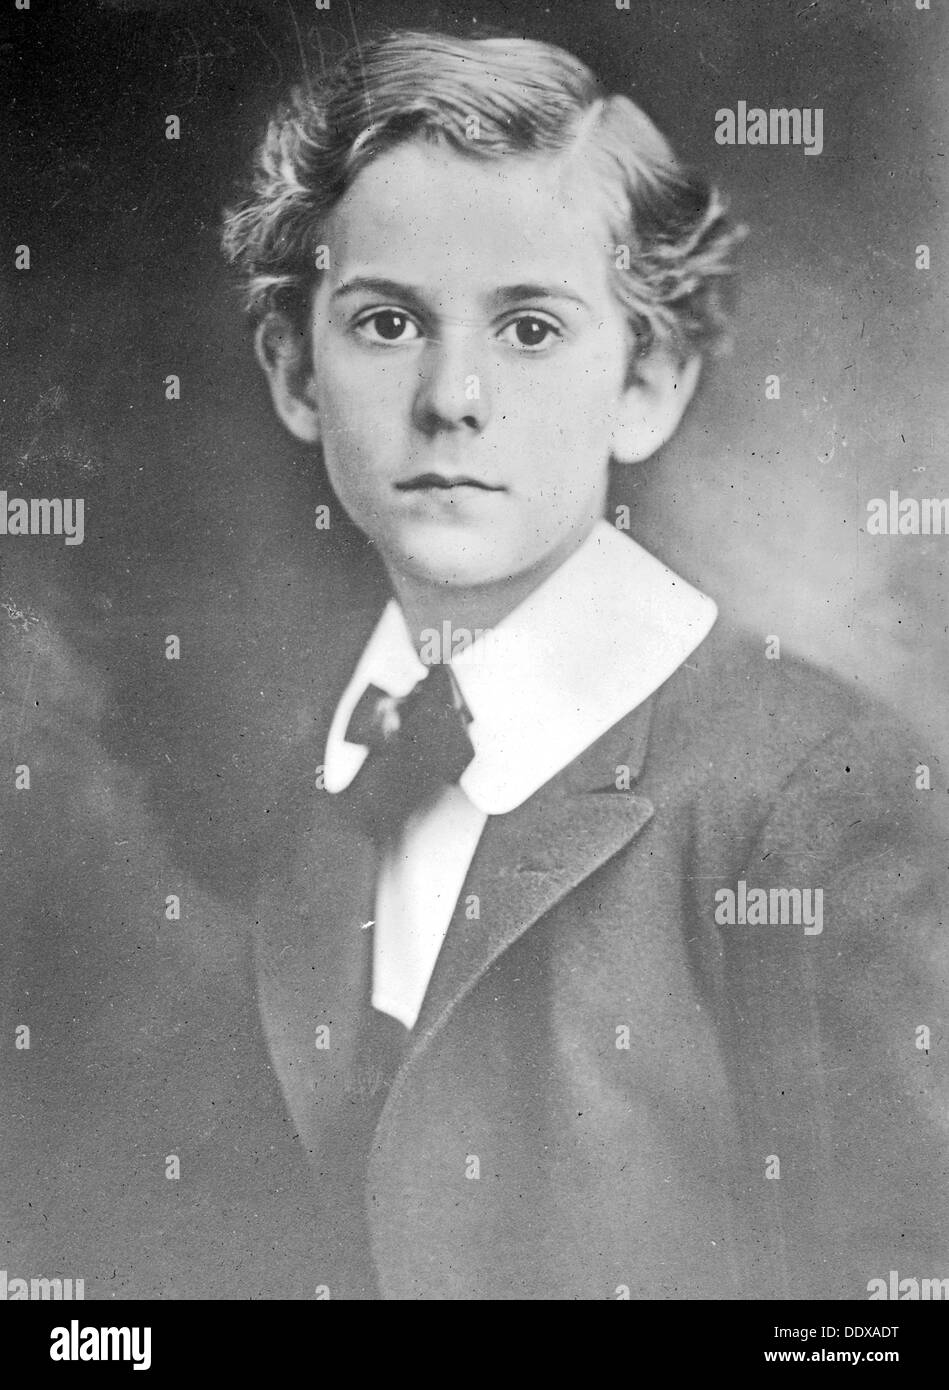 Prince Ernst of Hohenberg, Prince Ernst von Hohenberg, son of Archduke Franz Ferdinand Stock Photo